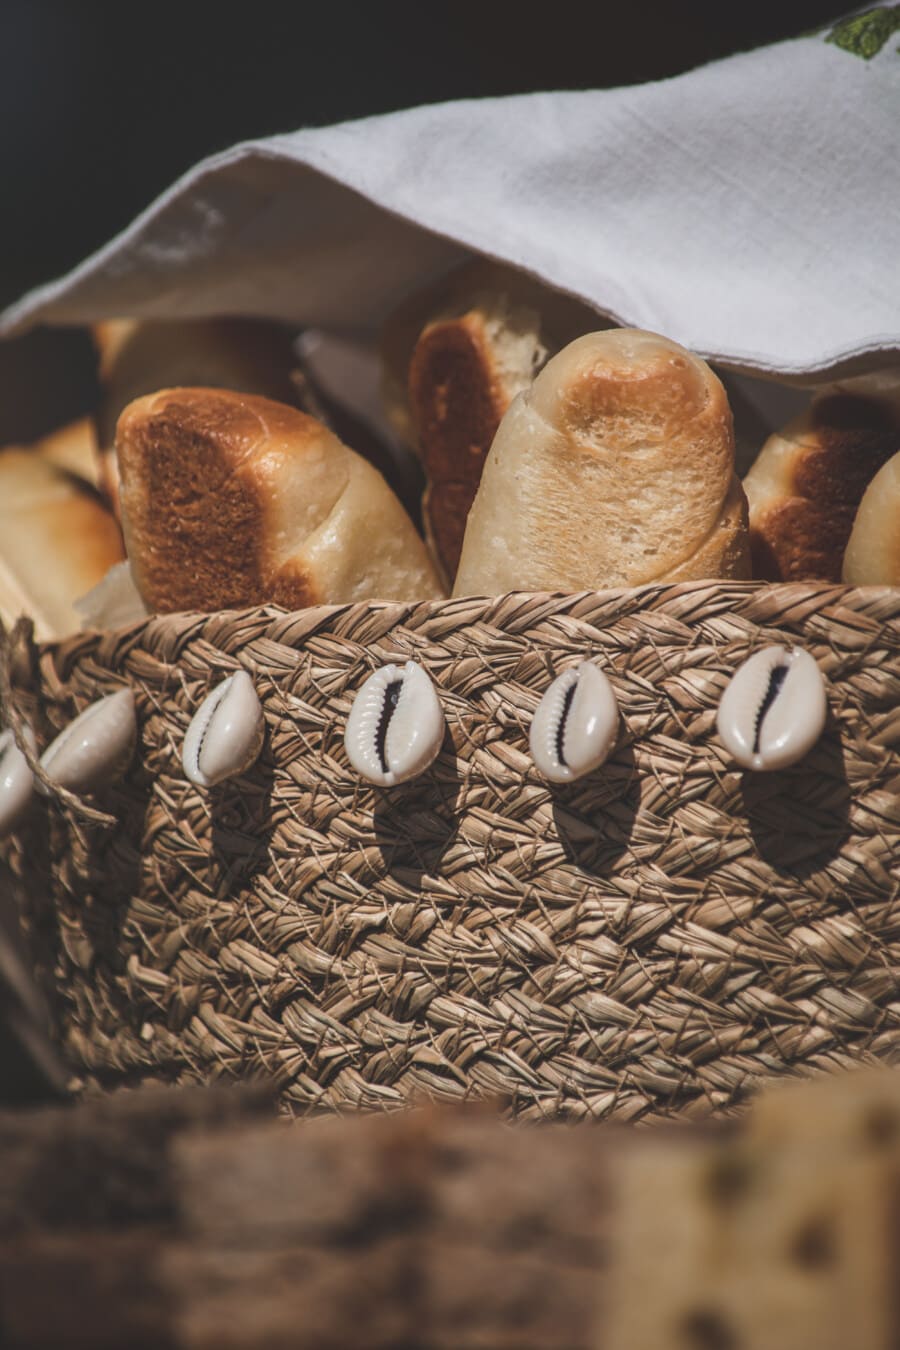 домашнее, цельнозерновой хлеб, хлеб, традиционные, плетеные корзины, Морская раковина, украшения, питание, натюрморт, природа